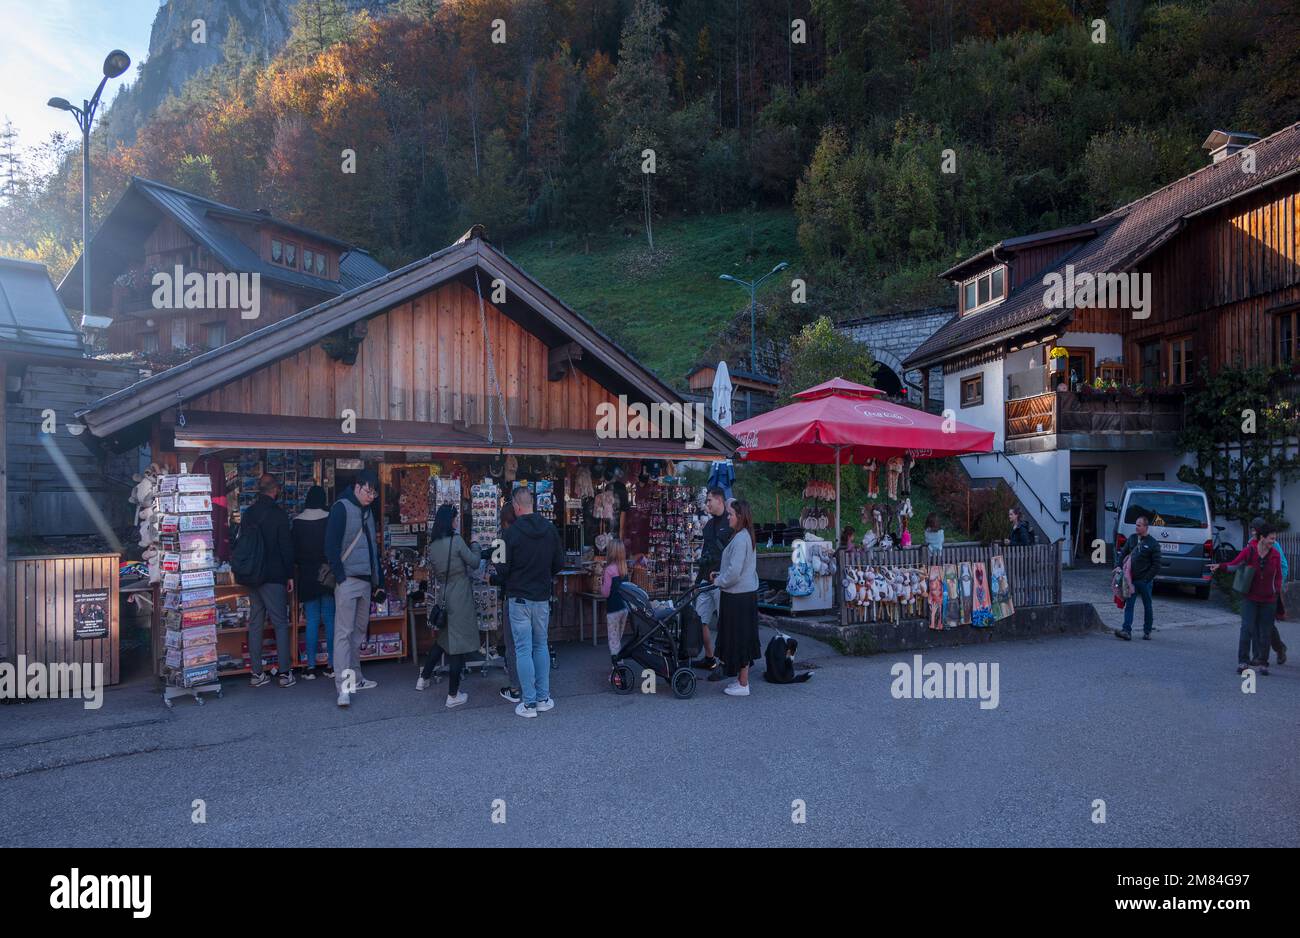 Blick auf einen Souvenirladen auf den Straßen, der Winterkleidung, bunte Magnete, Stoffspielzeug und Sammlerstücke verkauft, die in Hallstatt, Österreich, gefangen wurden. Stockfoto